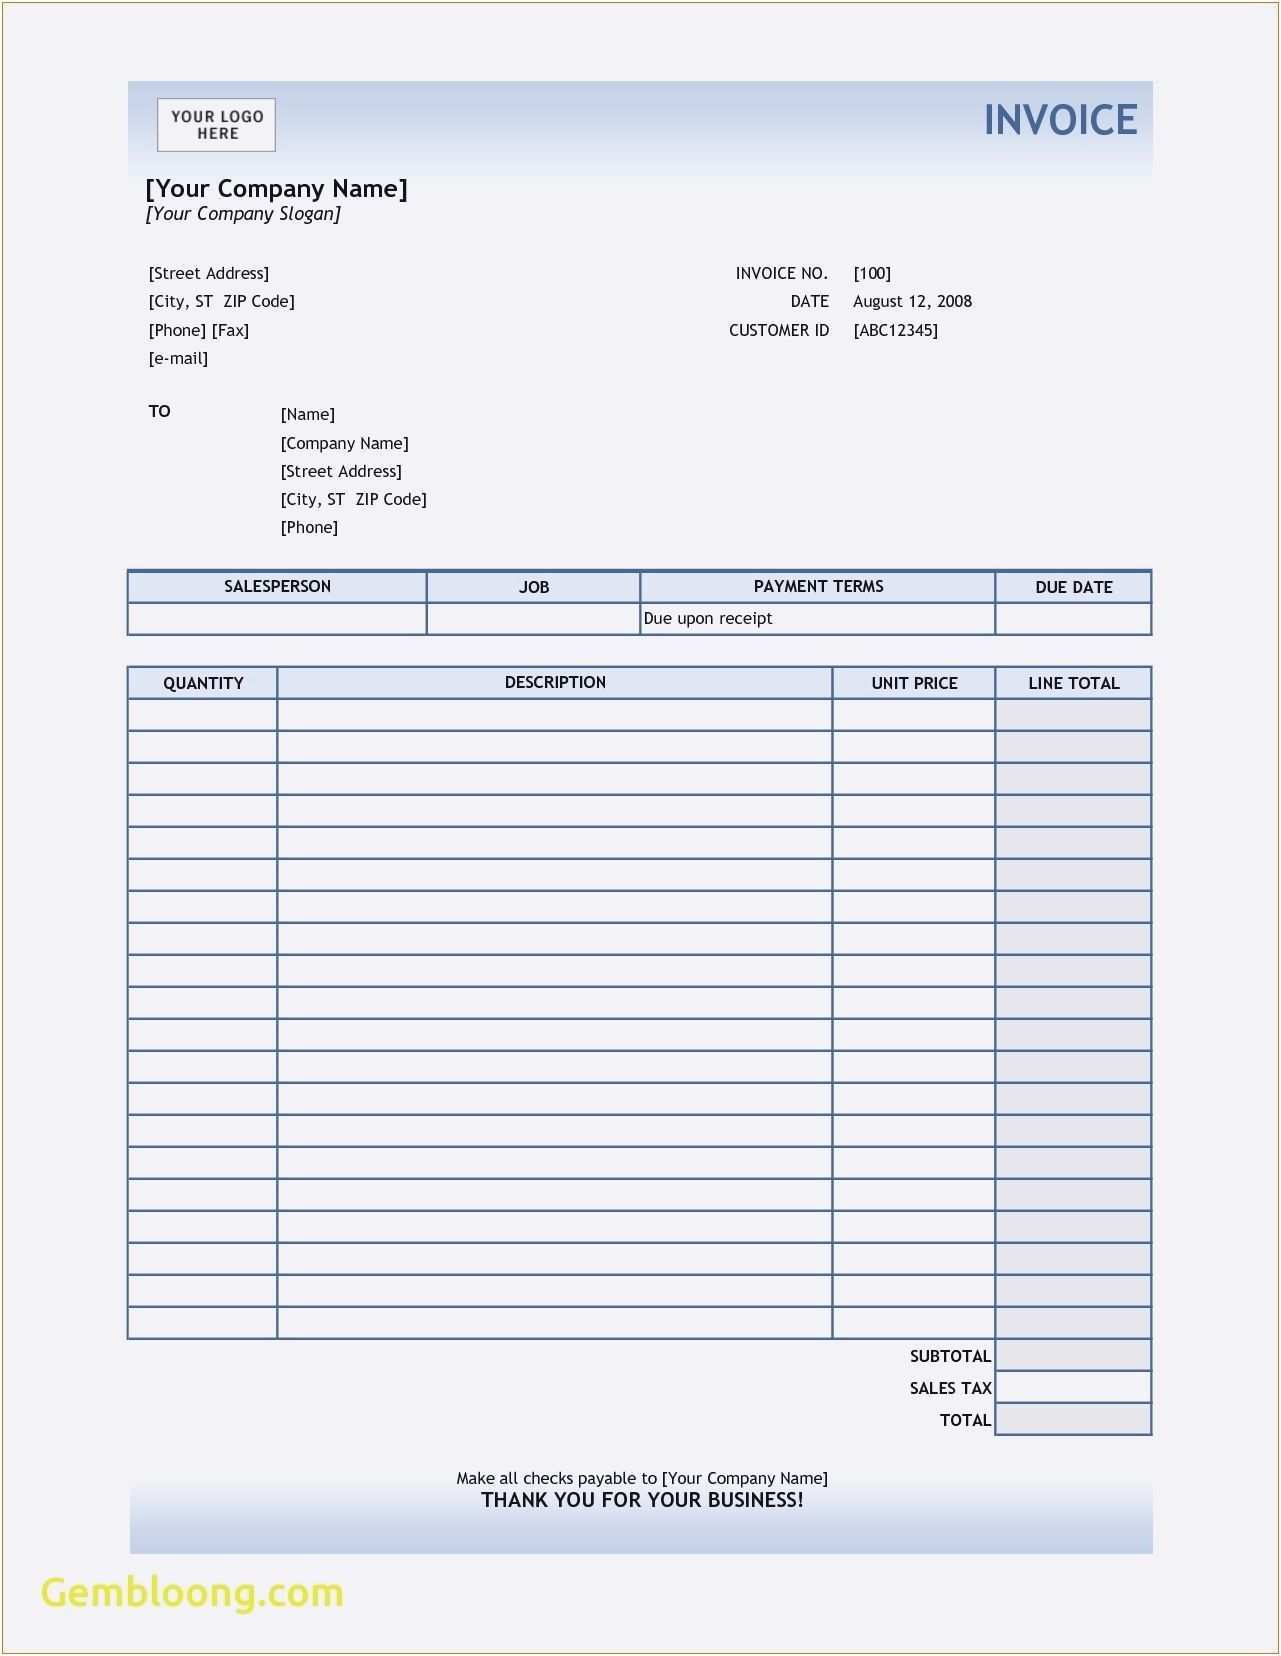 Neu Urlaubsantrag Excel Briefprobe Briefformat Briefvorlage Briefvorlagen Urlaub Template